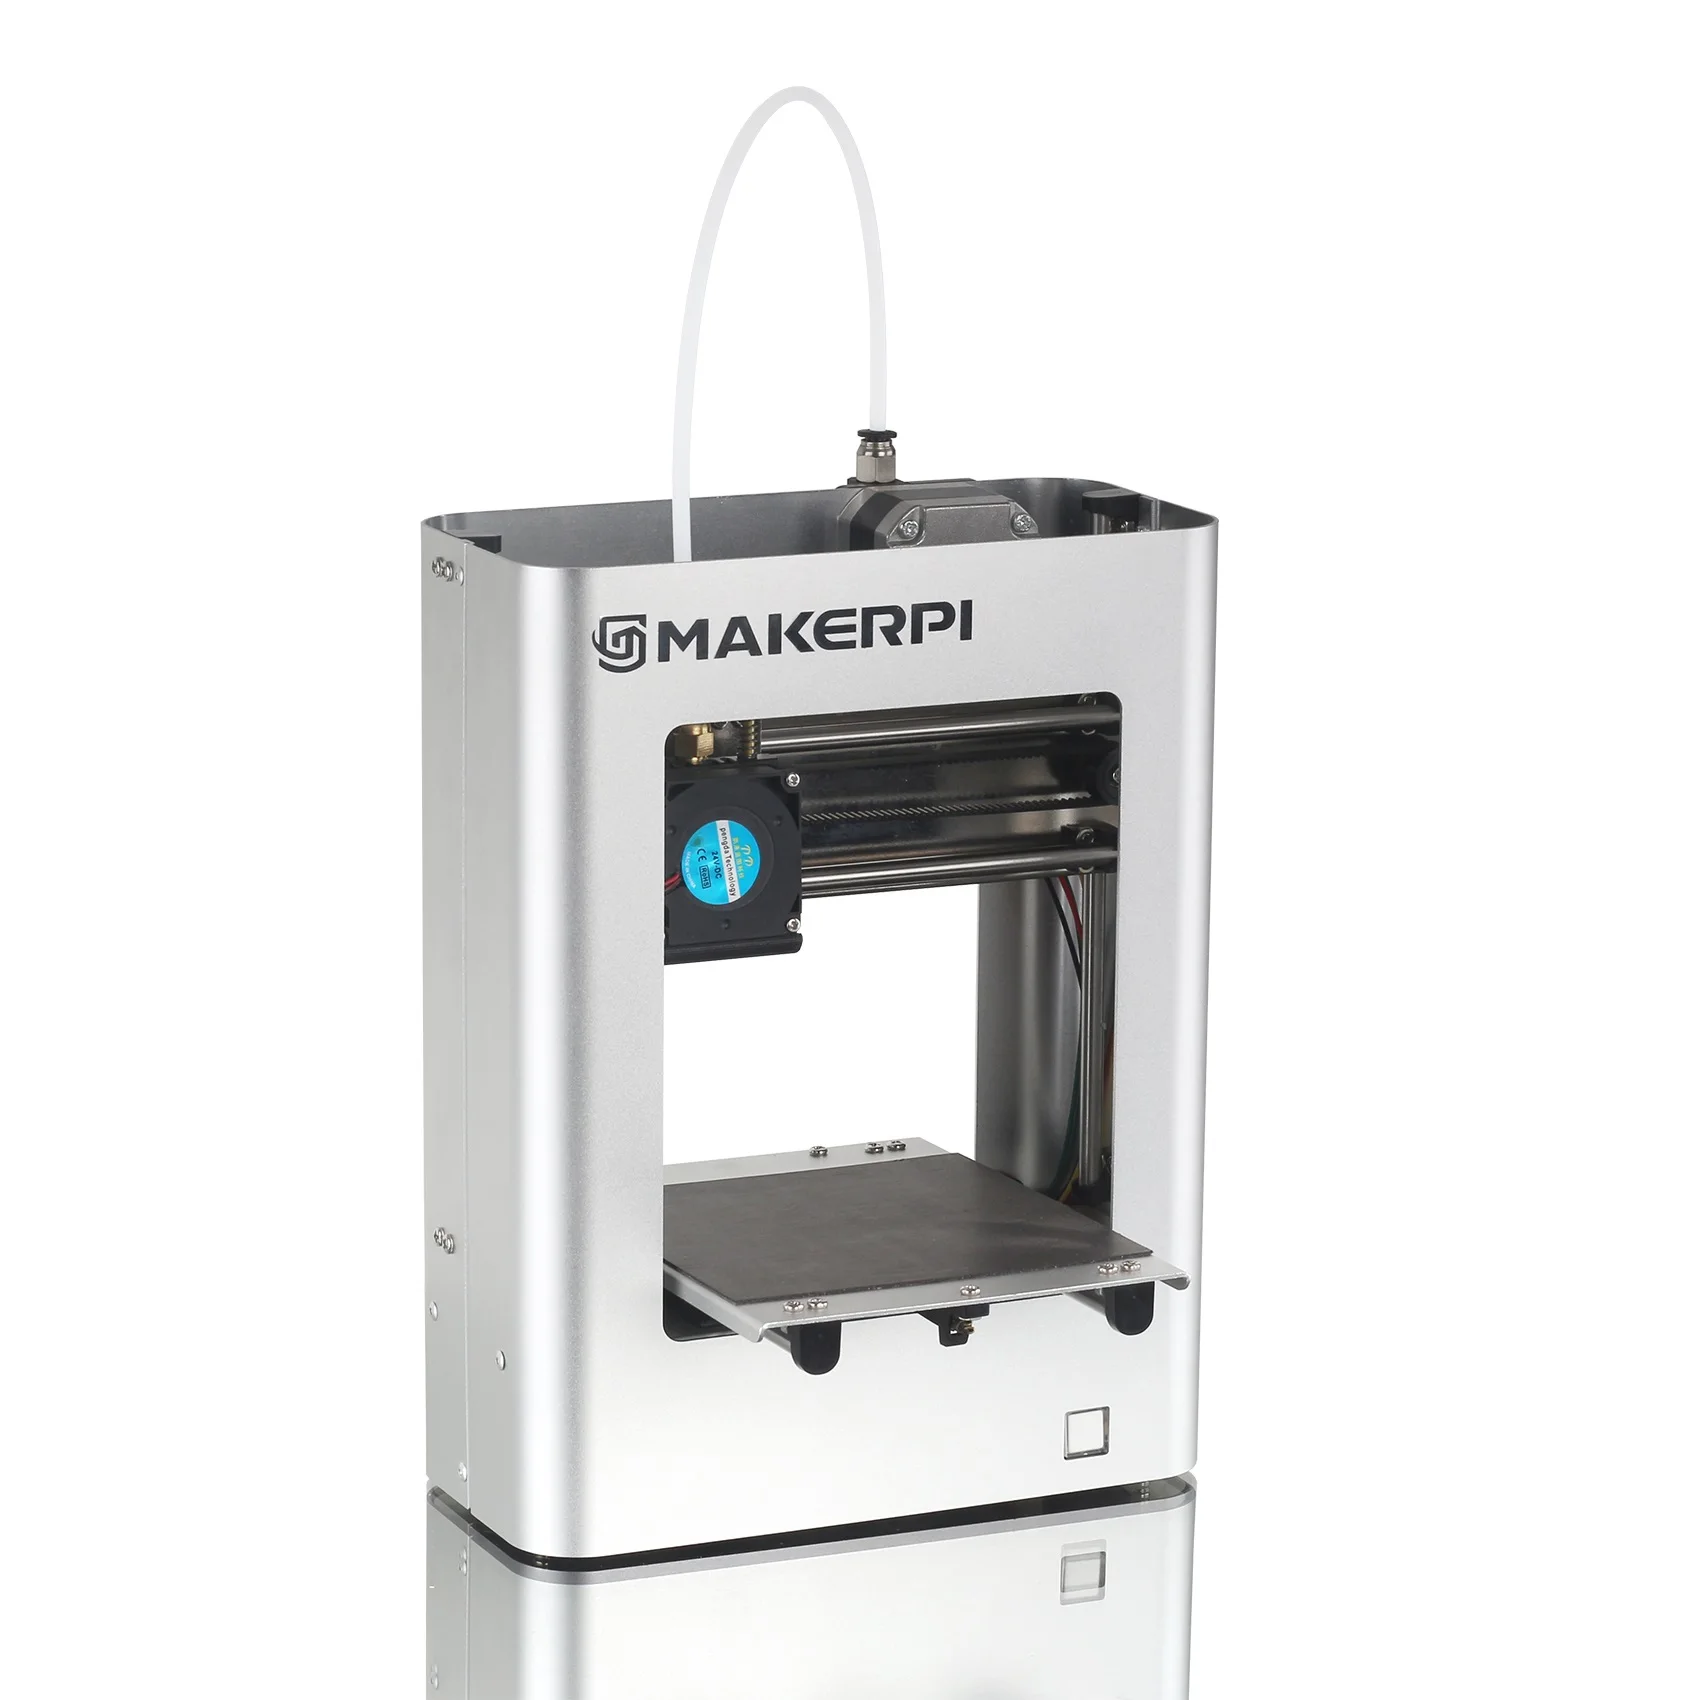 

MakerPi M1 высокопроизводительный чип 3d принтер машина для детей цифровые принтеры 3d